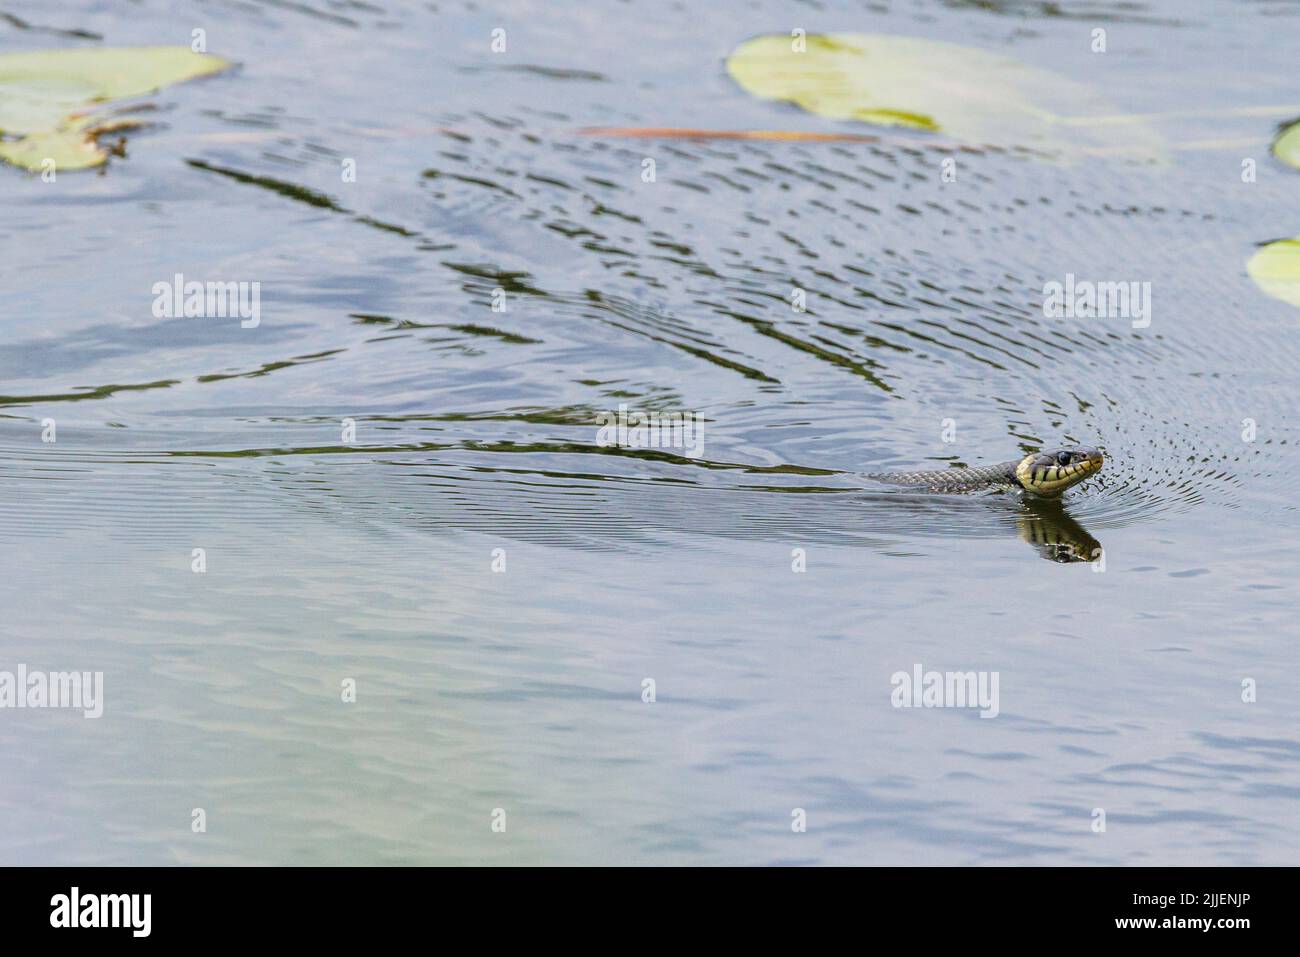 Couleuvre d'herbe (Natrix natrix), nageant dans le lac à travers un champ de nénuphars, vue latérale, Allemagne, Bavière Banque D'Images